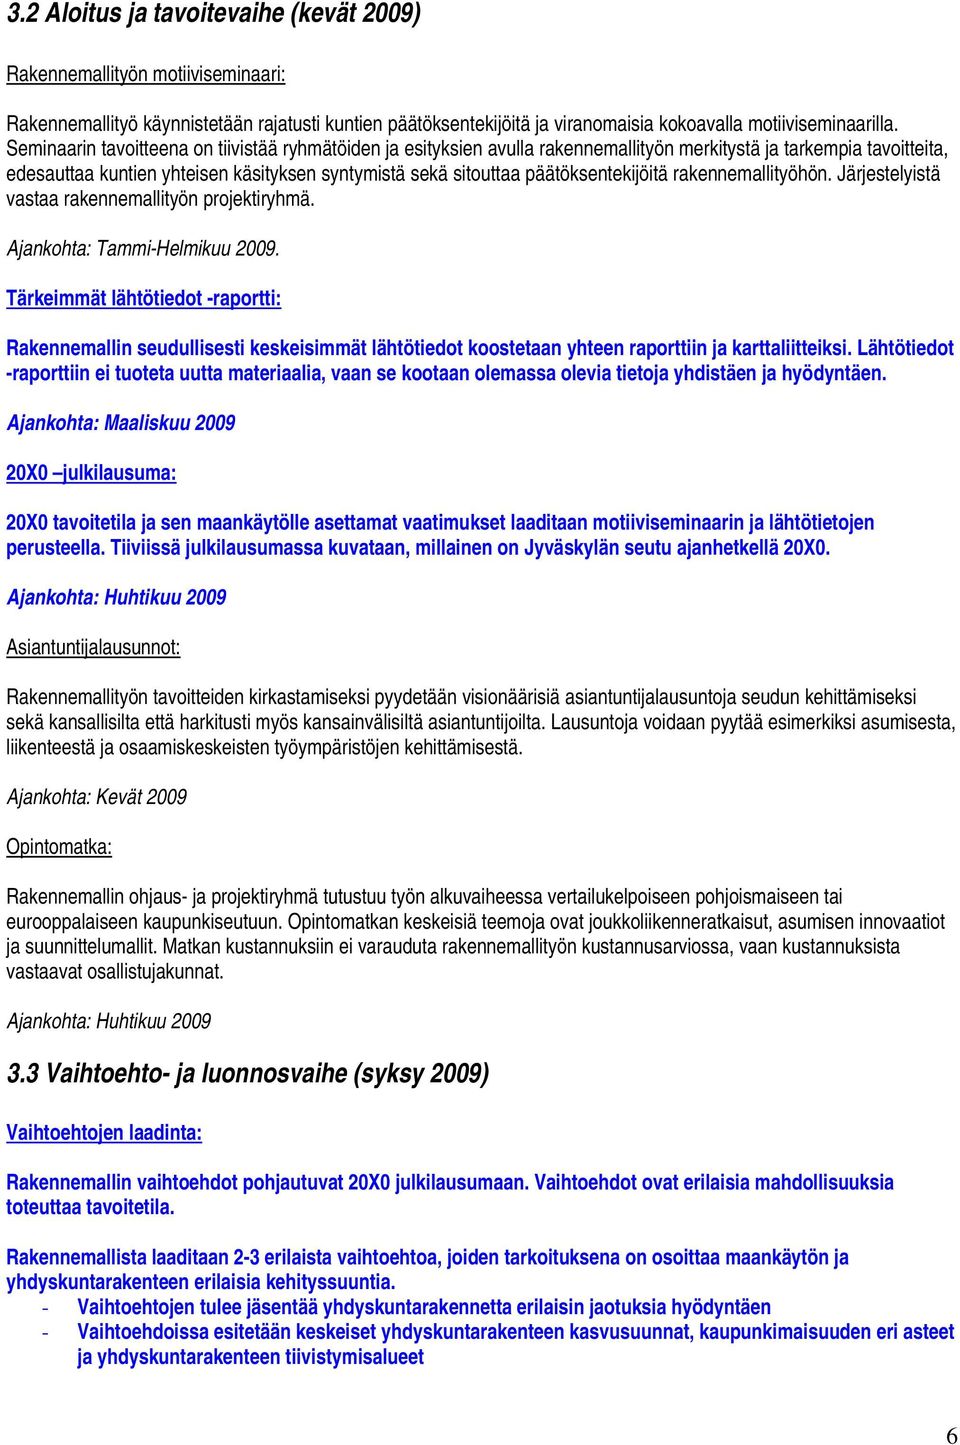 päätöksentekijöitä rakennemallityöhön. Järjestelyistä vastaa rakennemallityön projektiryhmä. Ajankohta: Tammi-Helmikuu 2009.